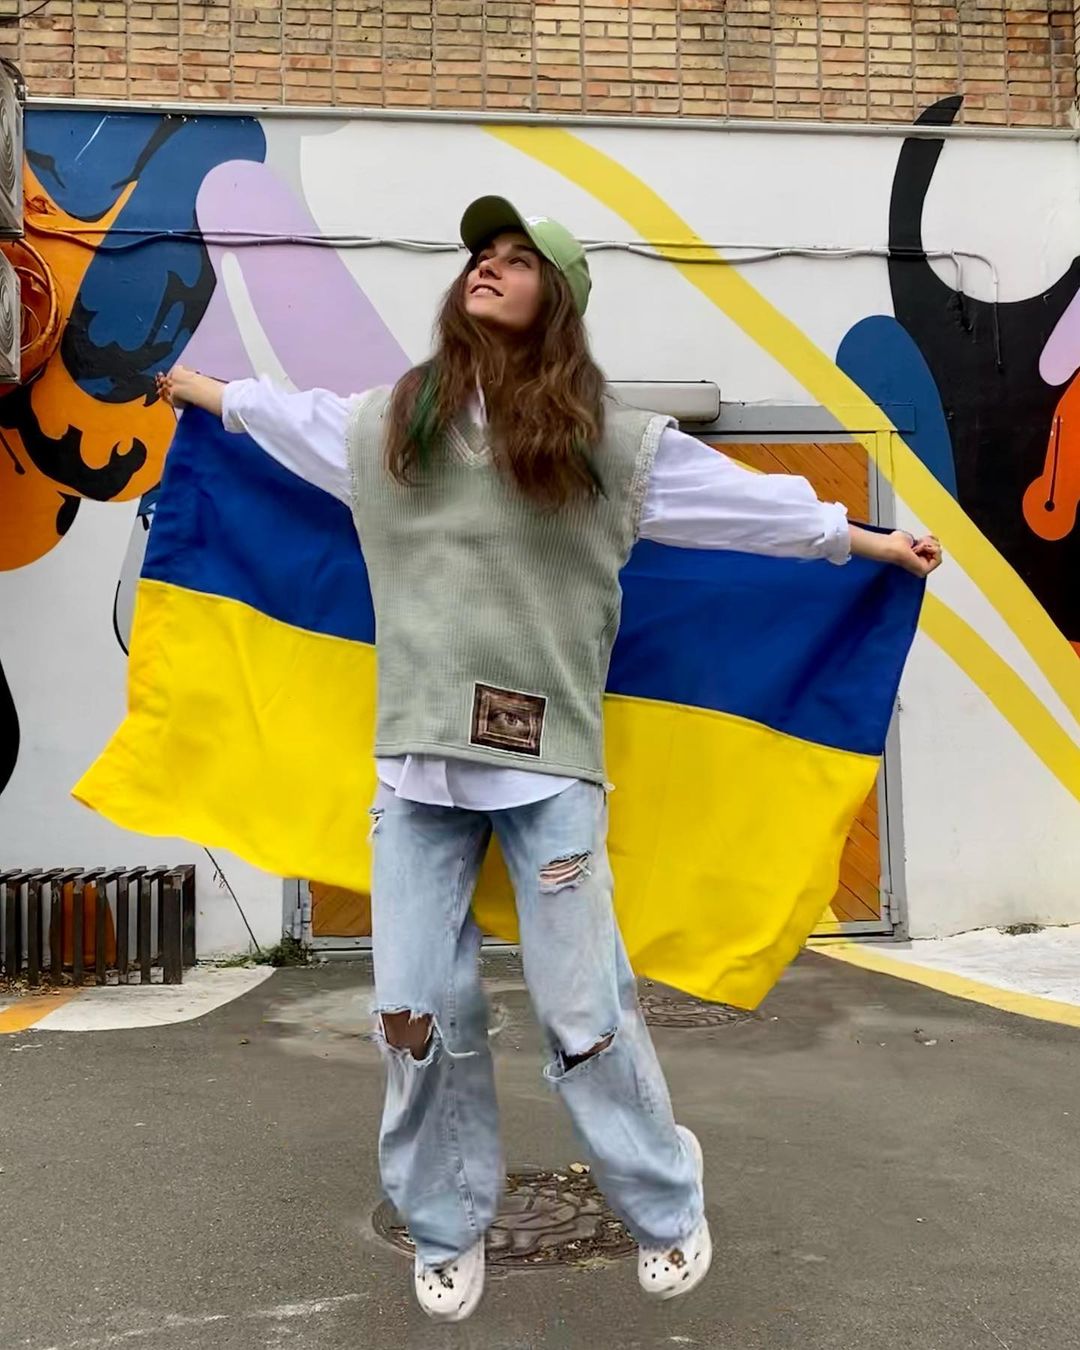 «Якщо ти говориш про Україну - ти бачиш співчуття, але це вже давно не різка реакція», - каже співачка про настрої у Європі. Фото: Instagram.com/thejerryheil/